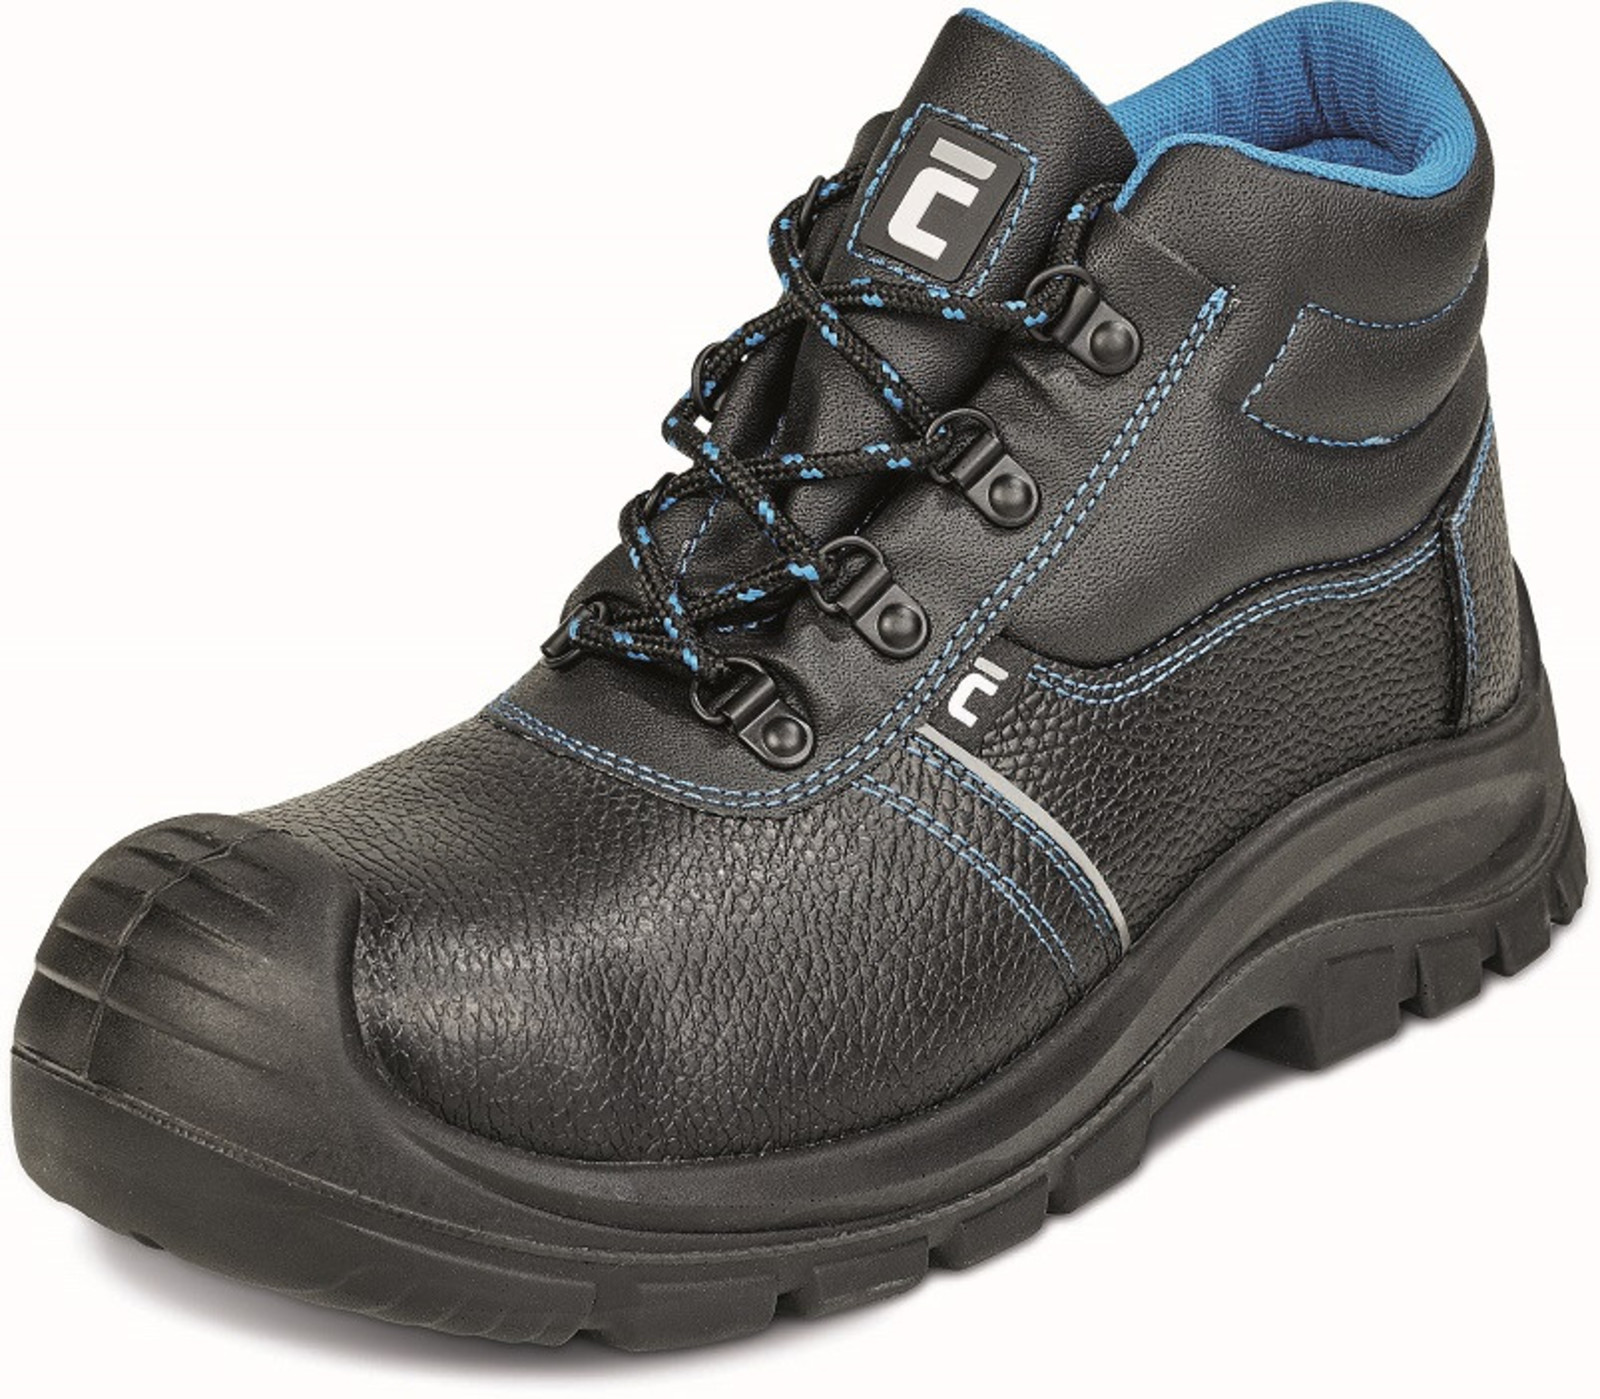 Pracovná obuv Cerva XT O1 - veľkosť: 46, farba: čierna